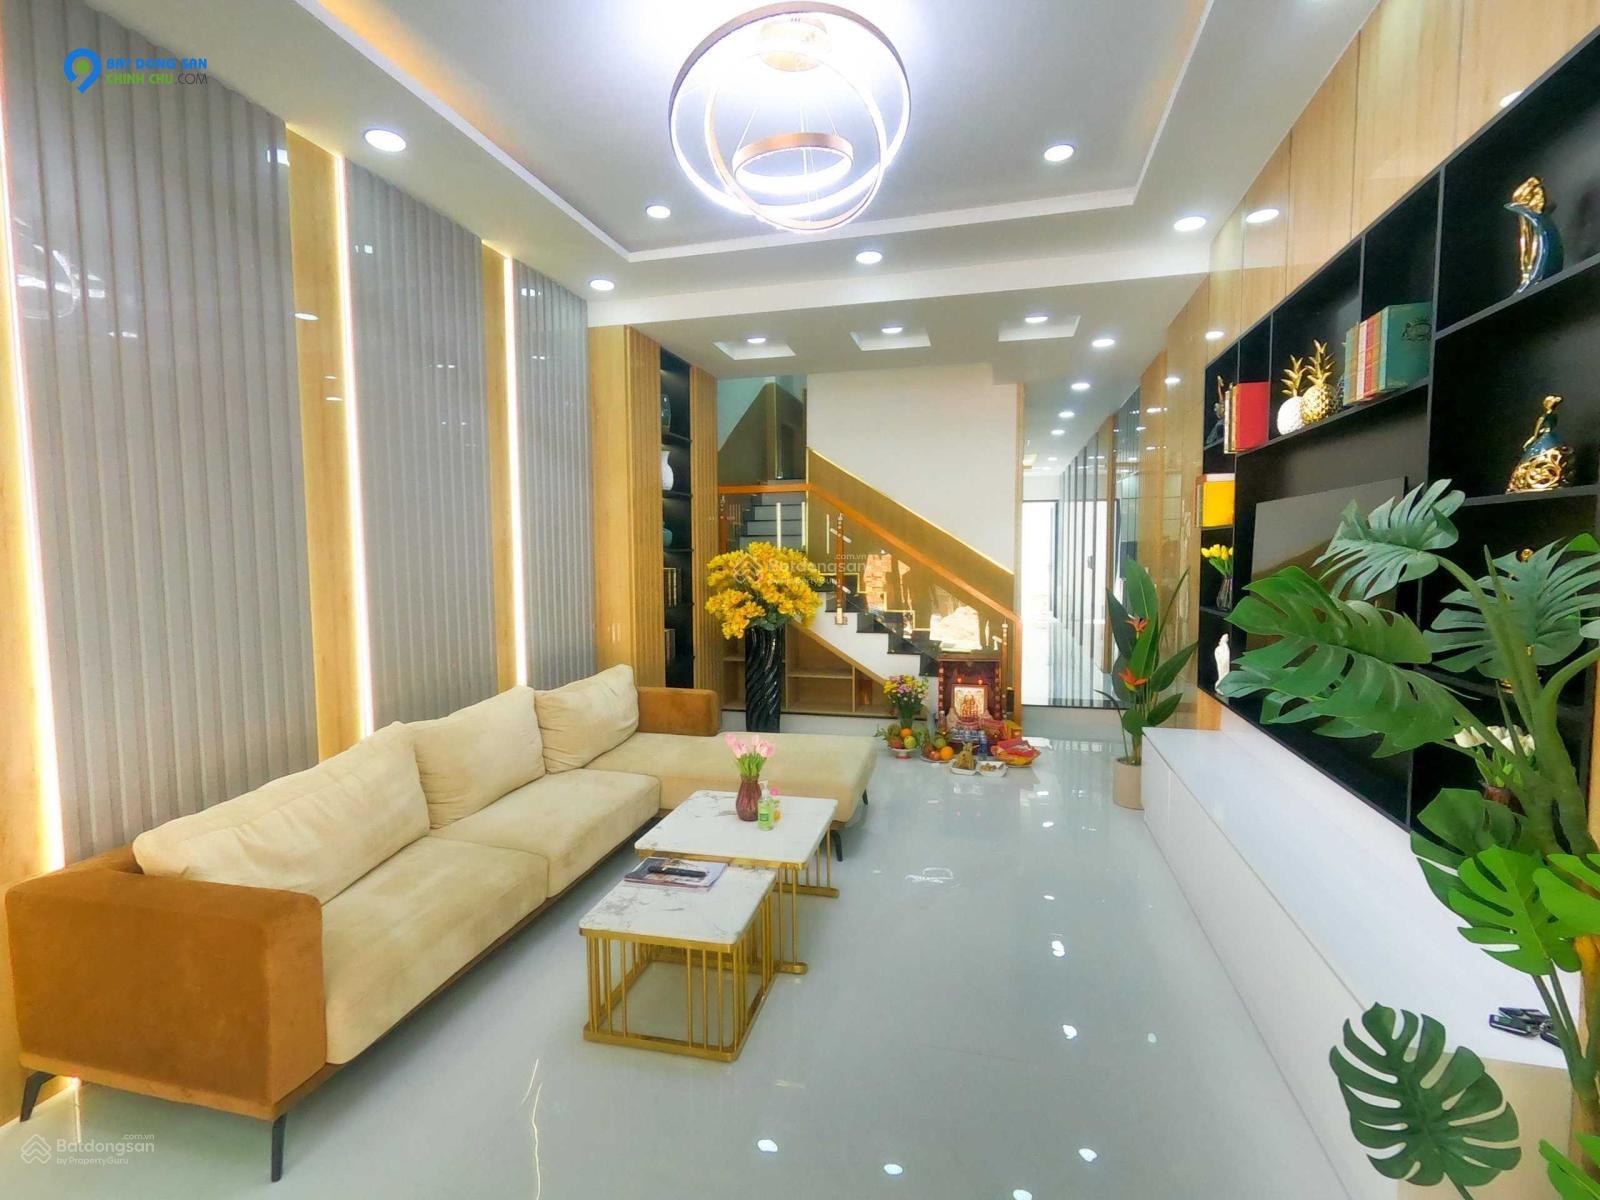 Thu Trang Chính chủ bán  nhà Nguyễn  Thái Sơn 70m2, 4 tầng BTCT hẻm 12 m, chỉ 6,5 tỷ.